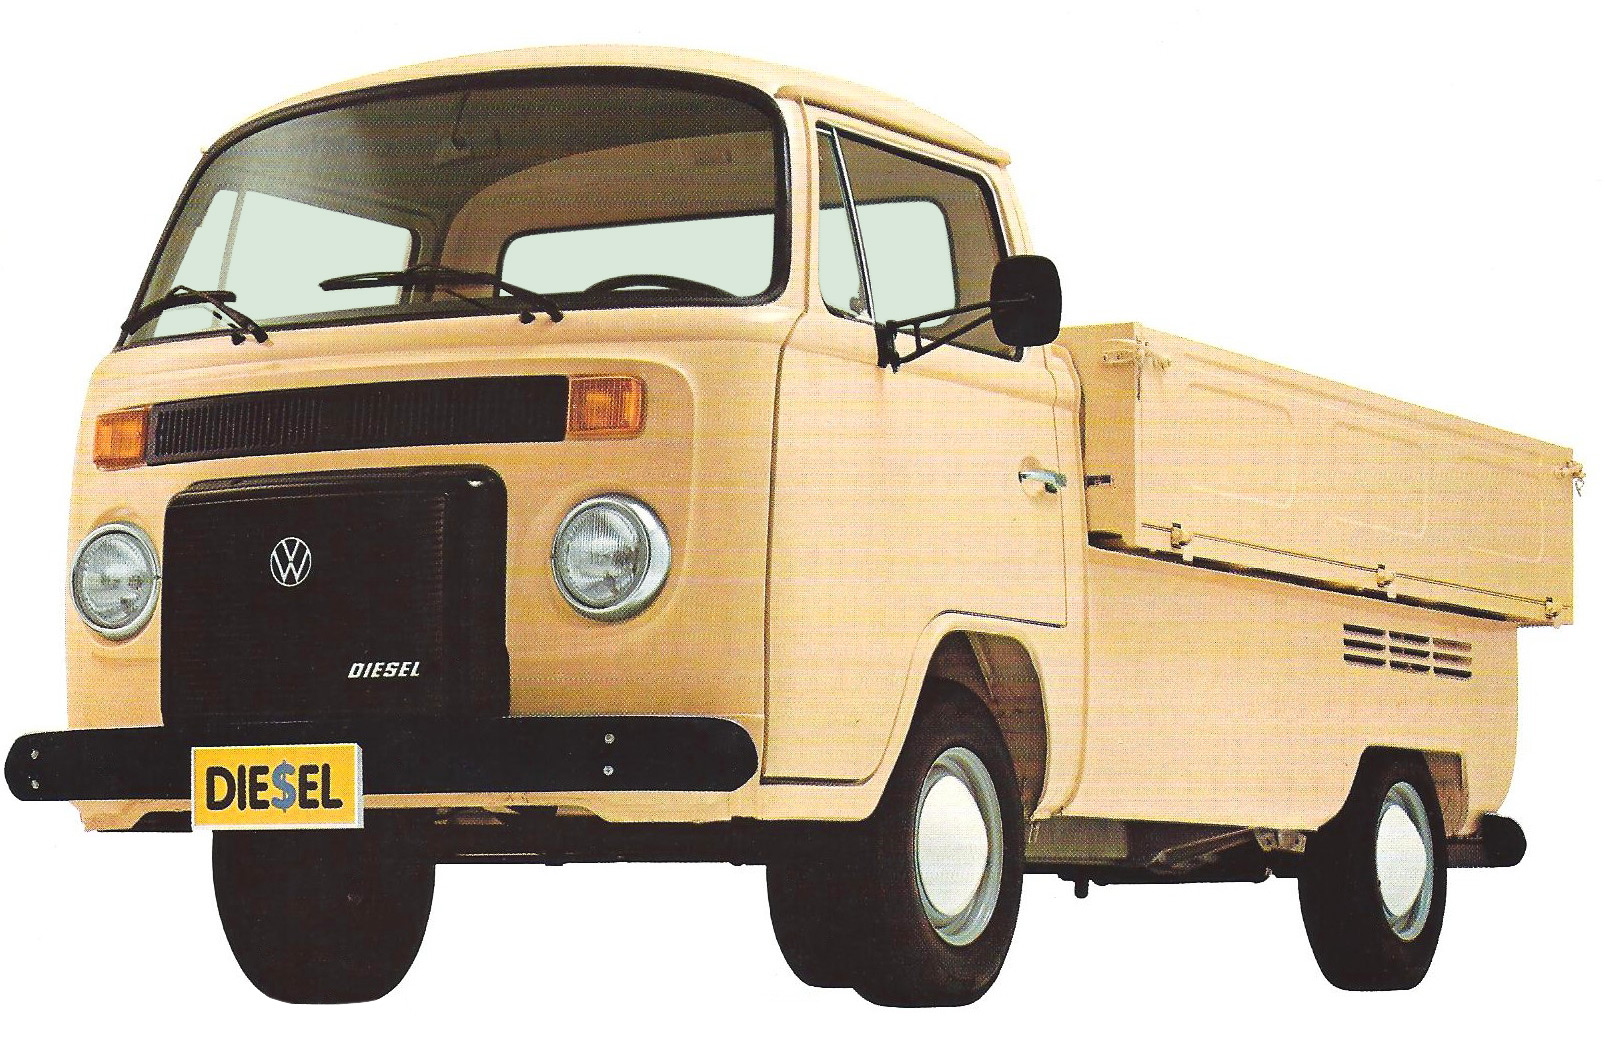 Carros com apelidos animais: Volkswagen Kombi Pick-up é a "cabrita" do asfalto